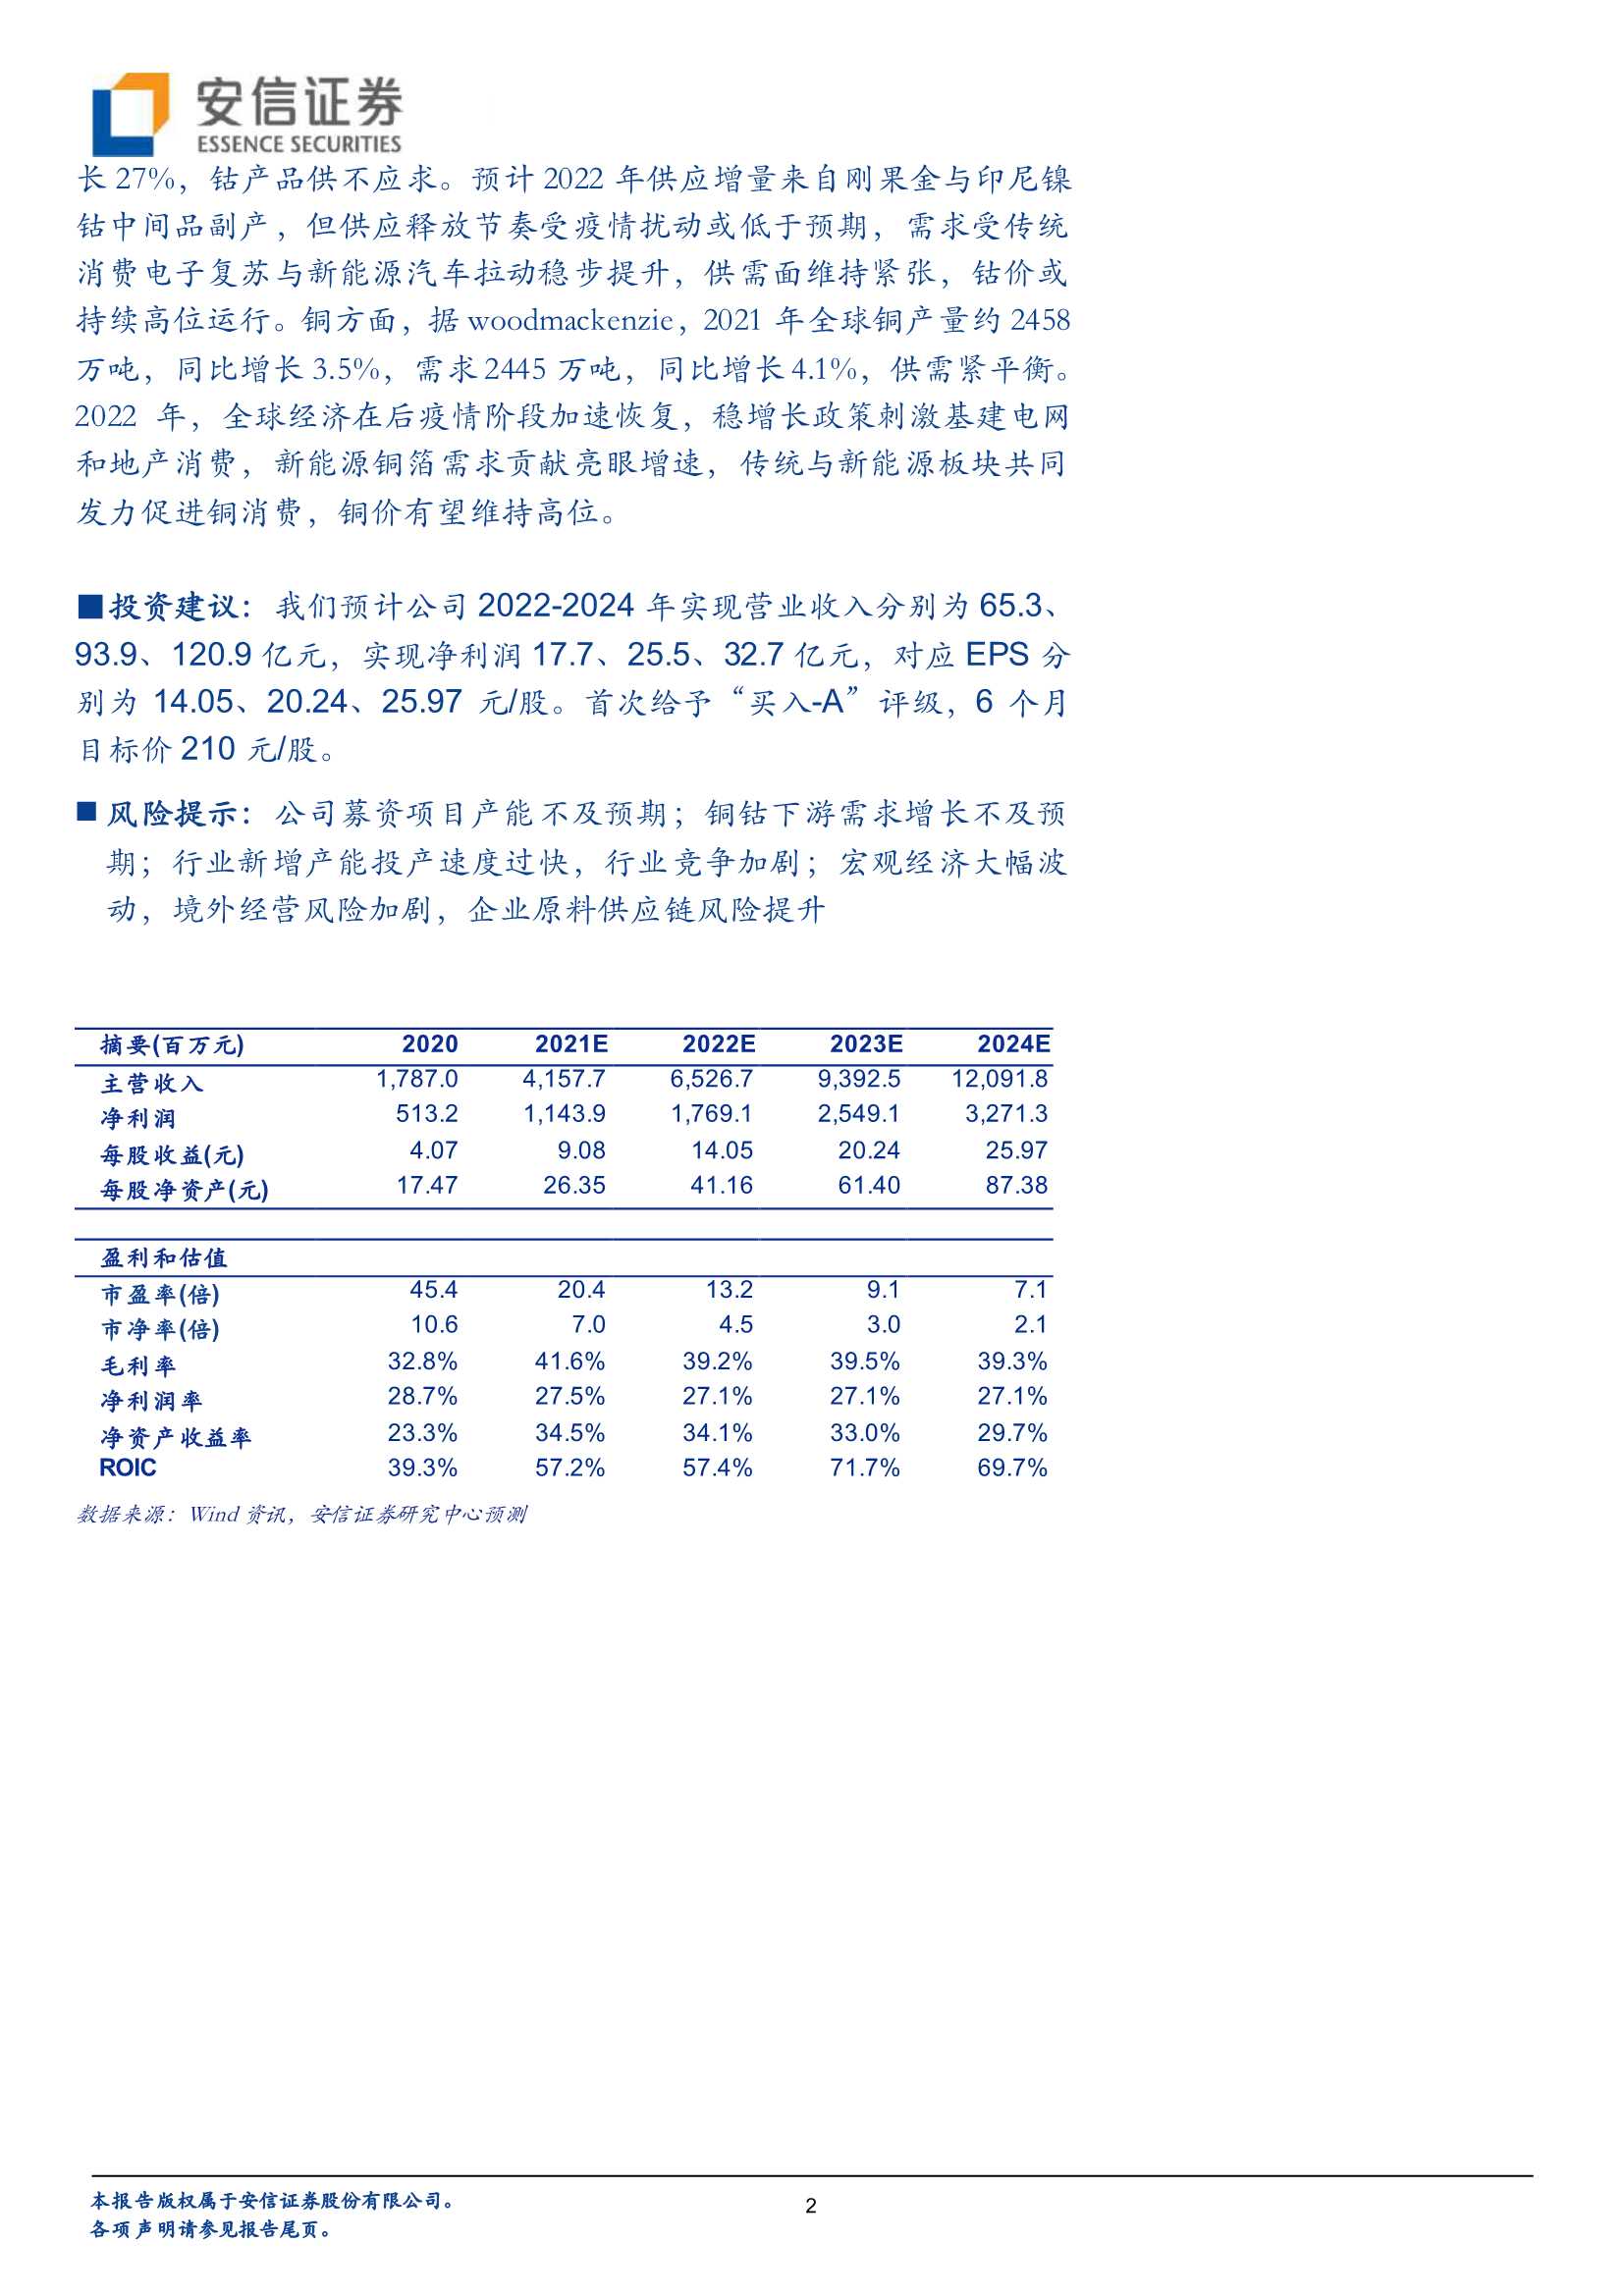 安信证券-腾远钴业-301219-高速成长的铜钴冶炼企业-20220322-29页